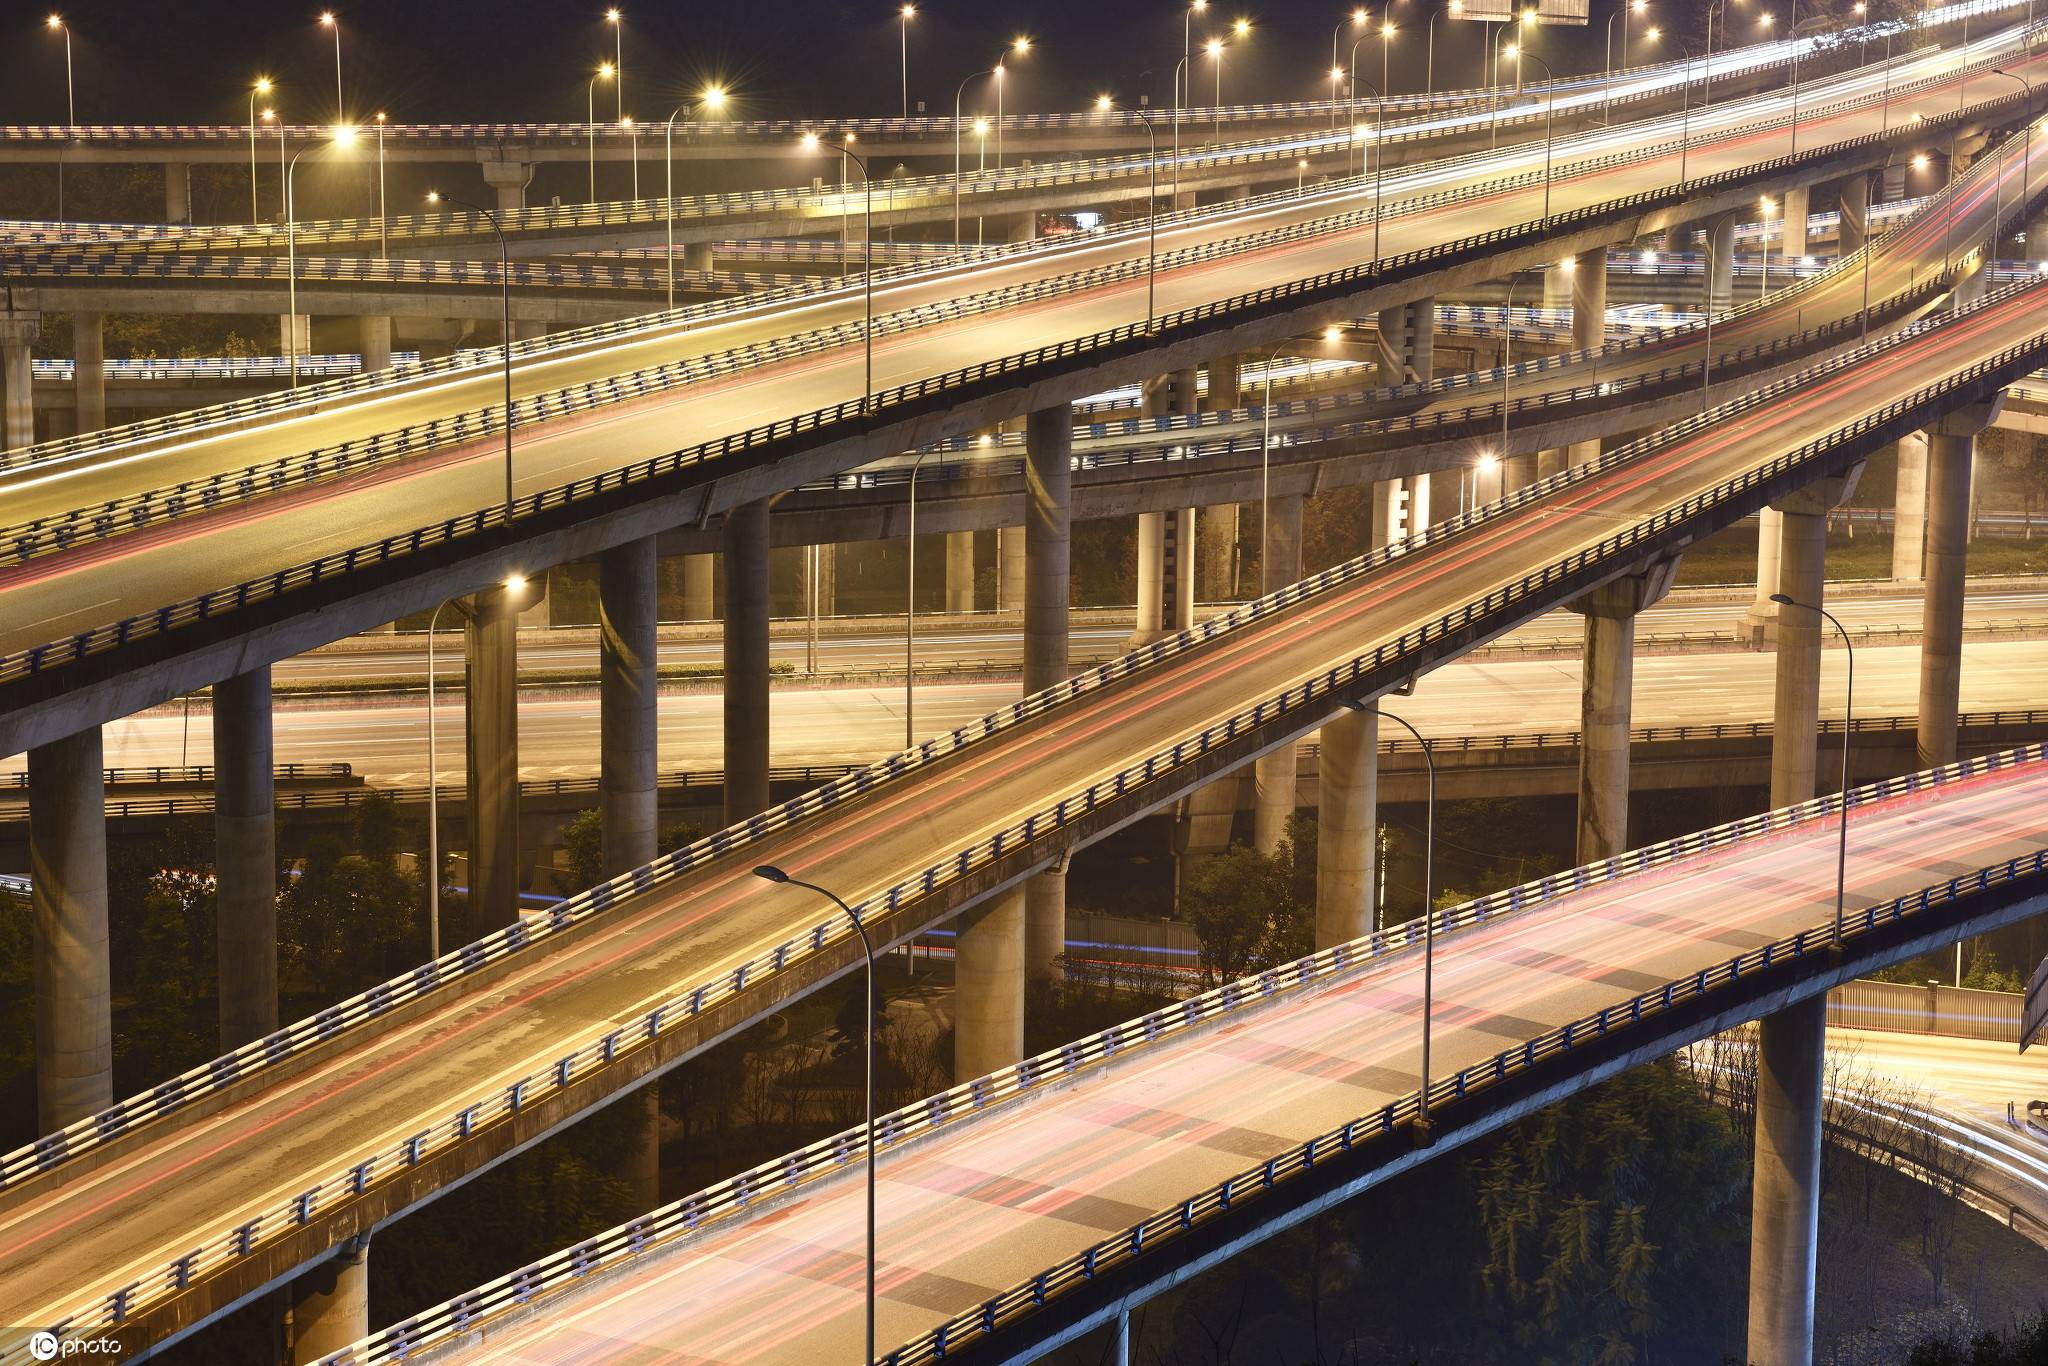 重庆黄桷湾公园建成 可打卡重庆最复杂立交桥